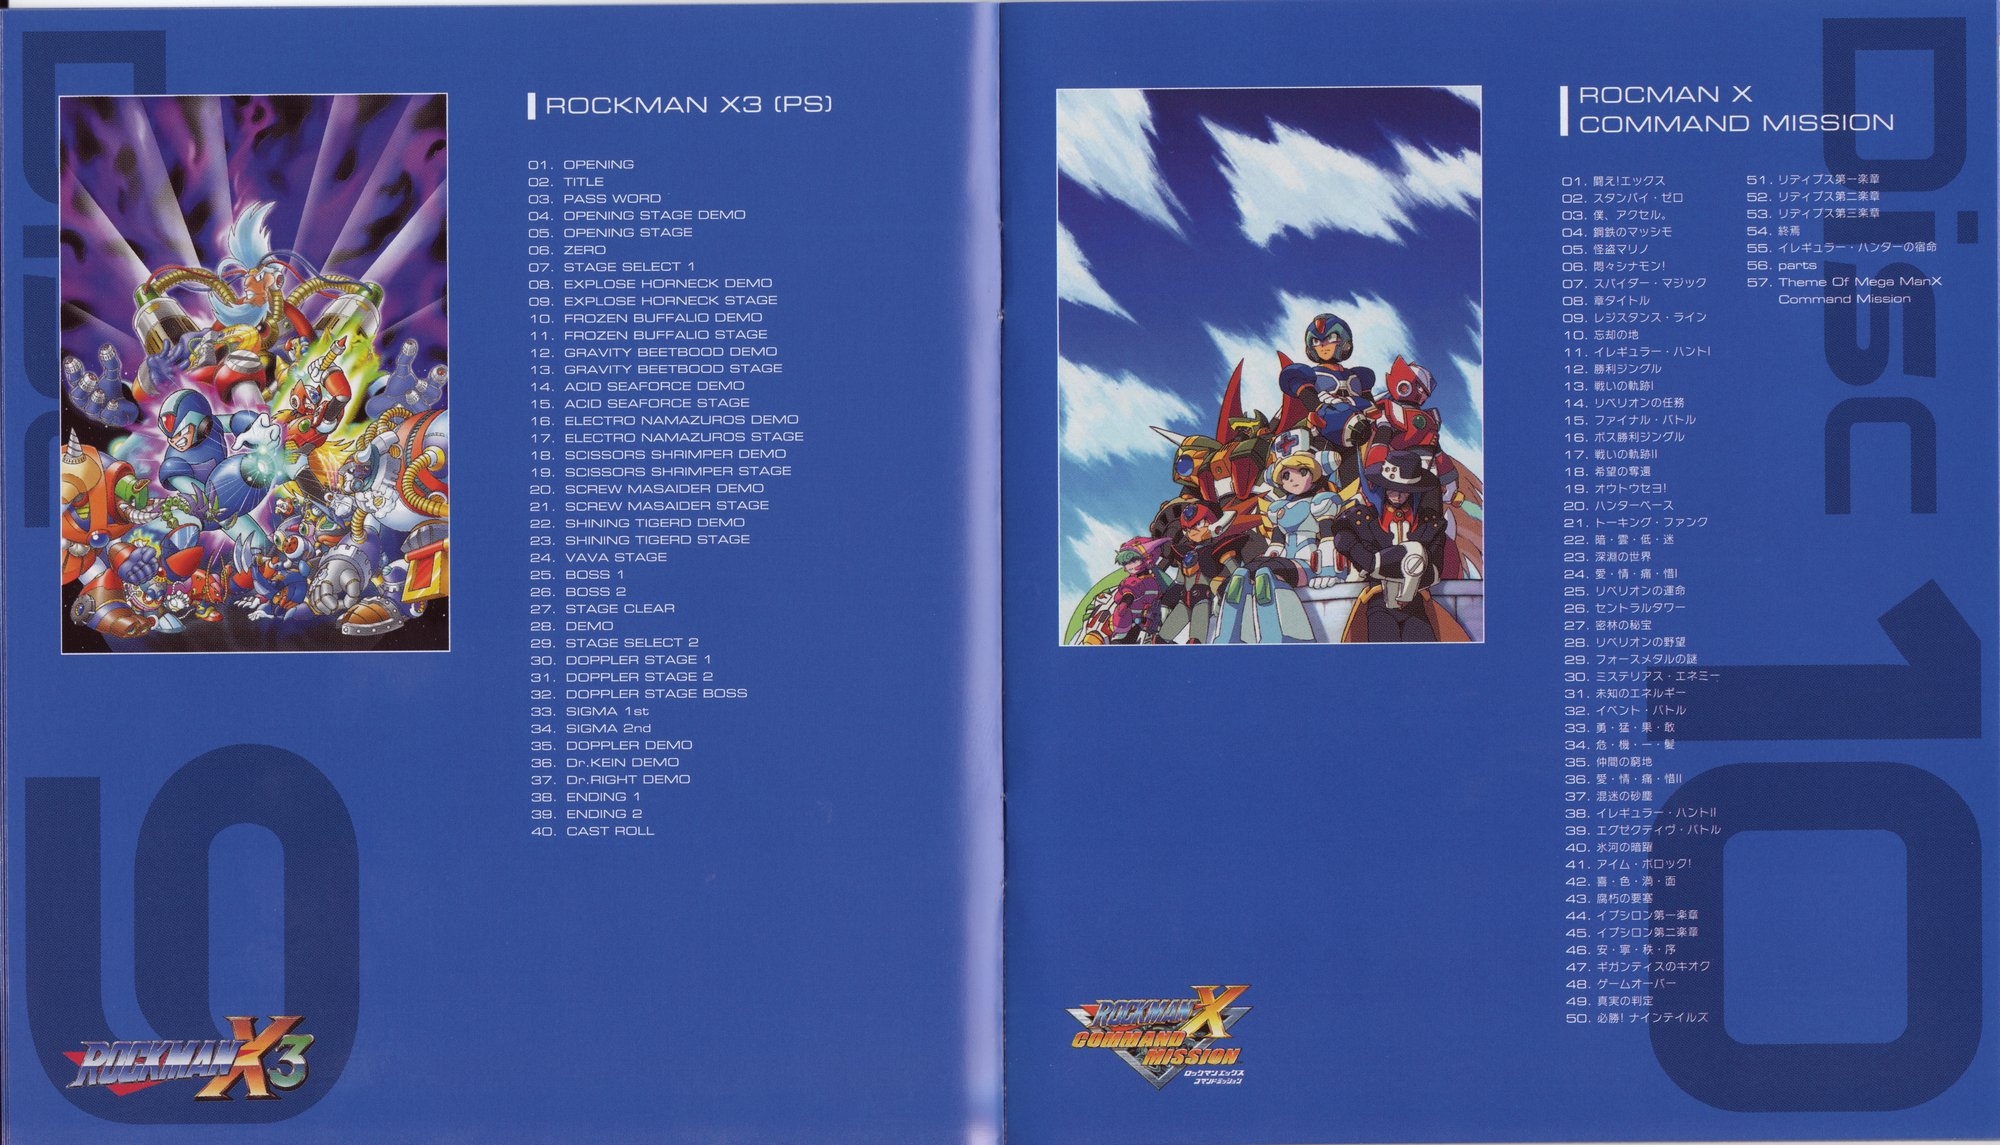 20th Anniversary ROCKMAN X SOUND BOX (2013) MP3 - Download 20th 